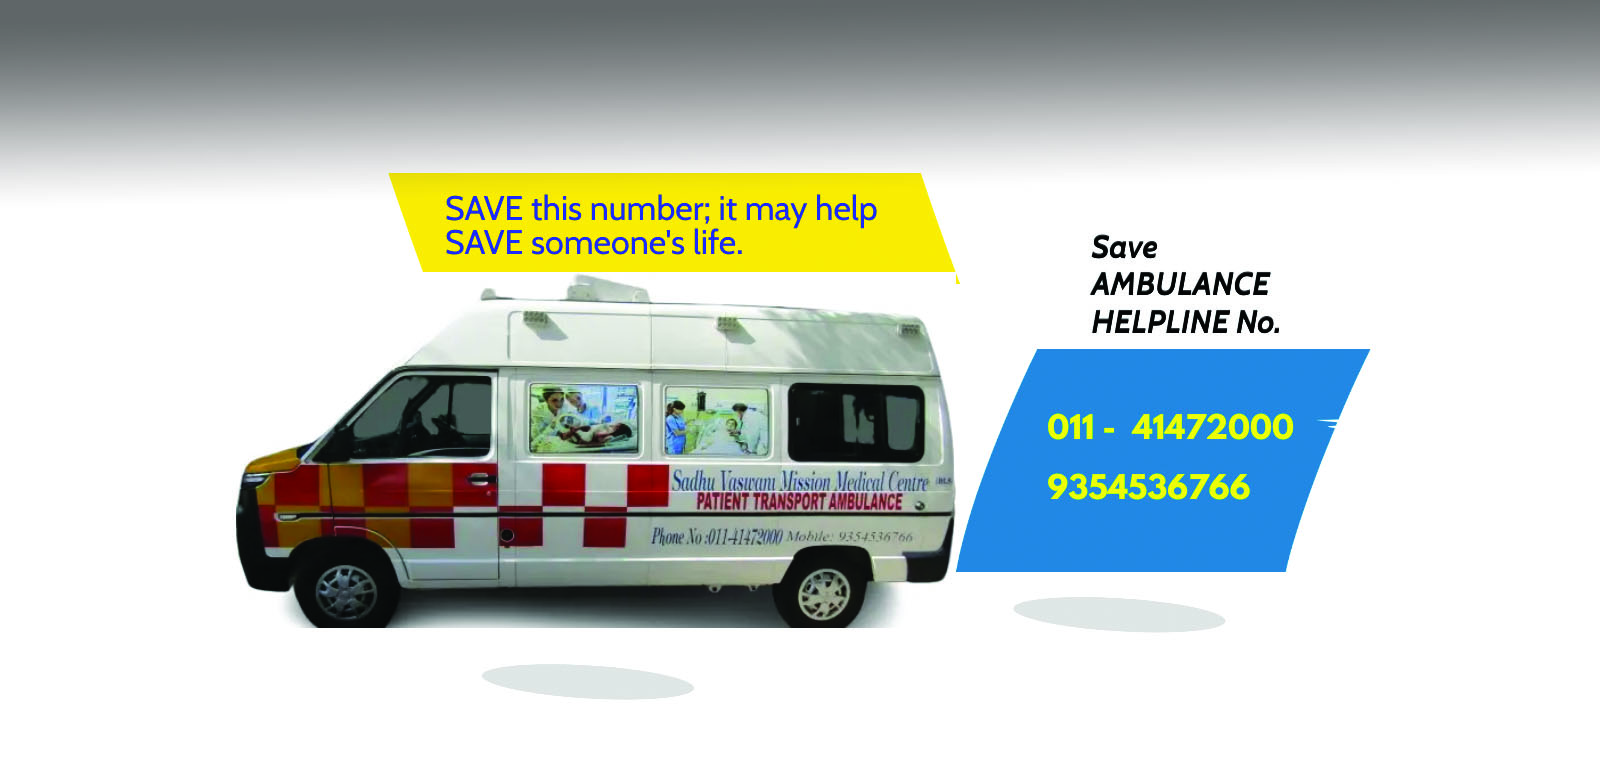 Ambulance Leaflet updated